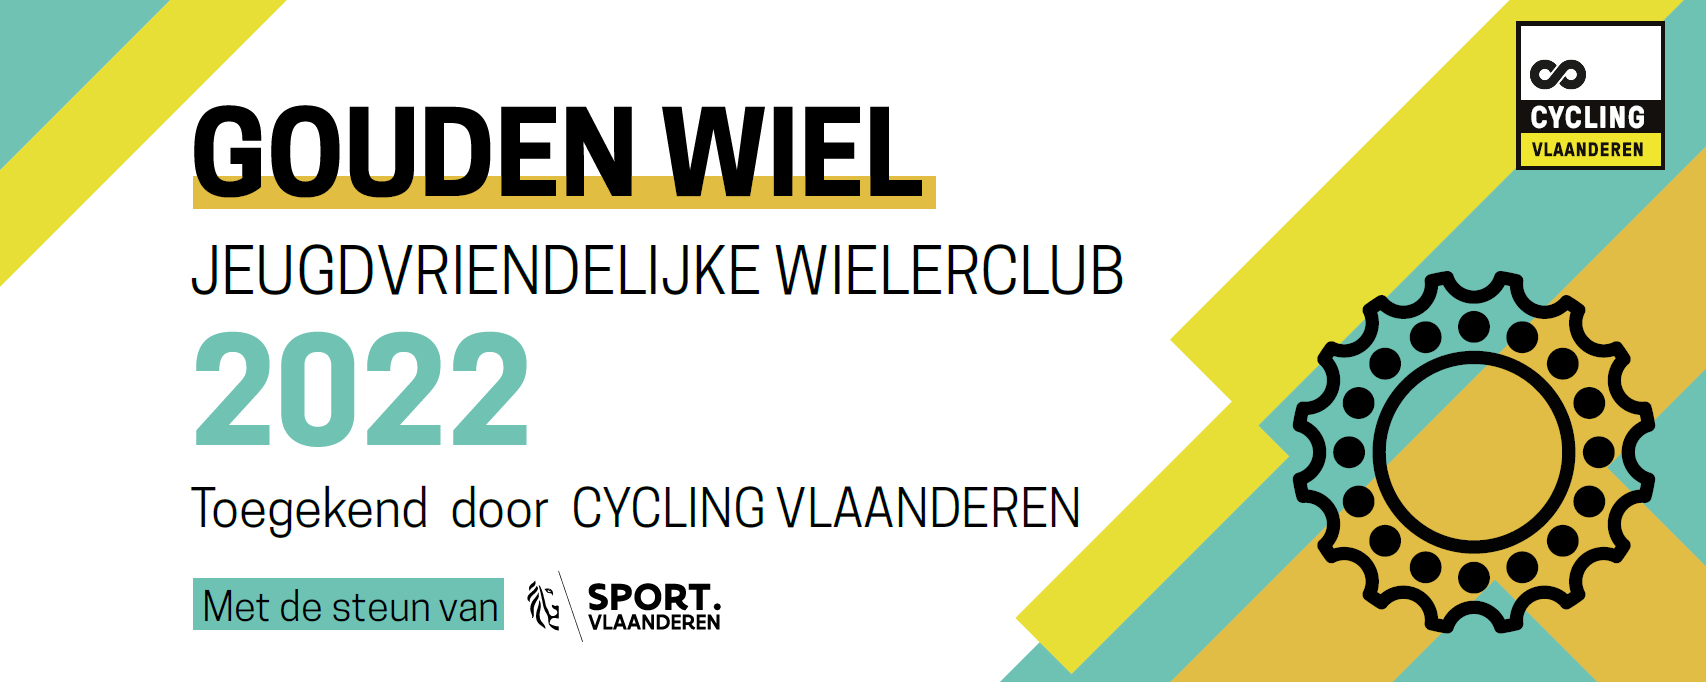 GOUDEN WIEL - Jeugdvriendelijke wielerclub 2022